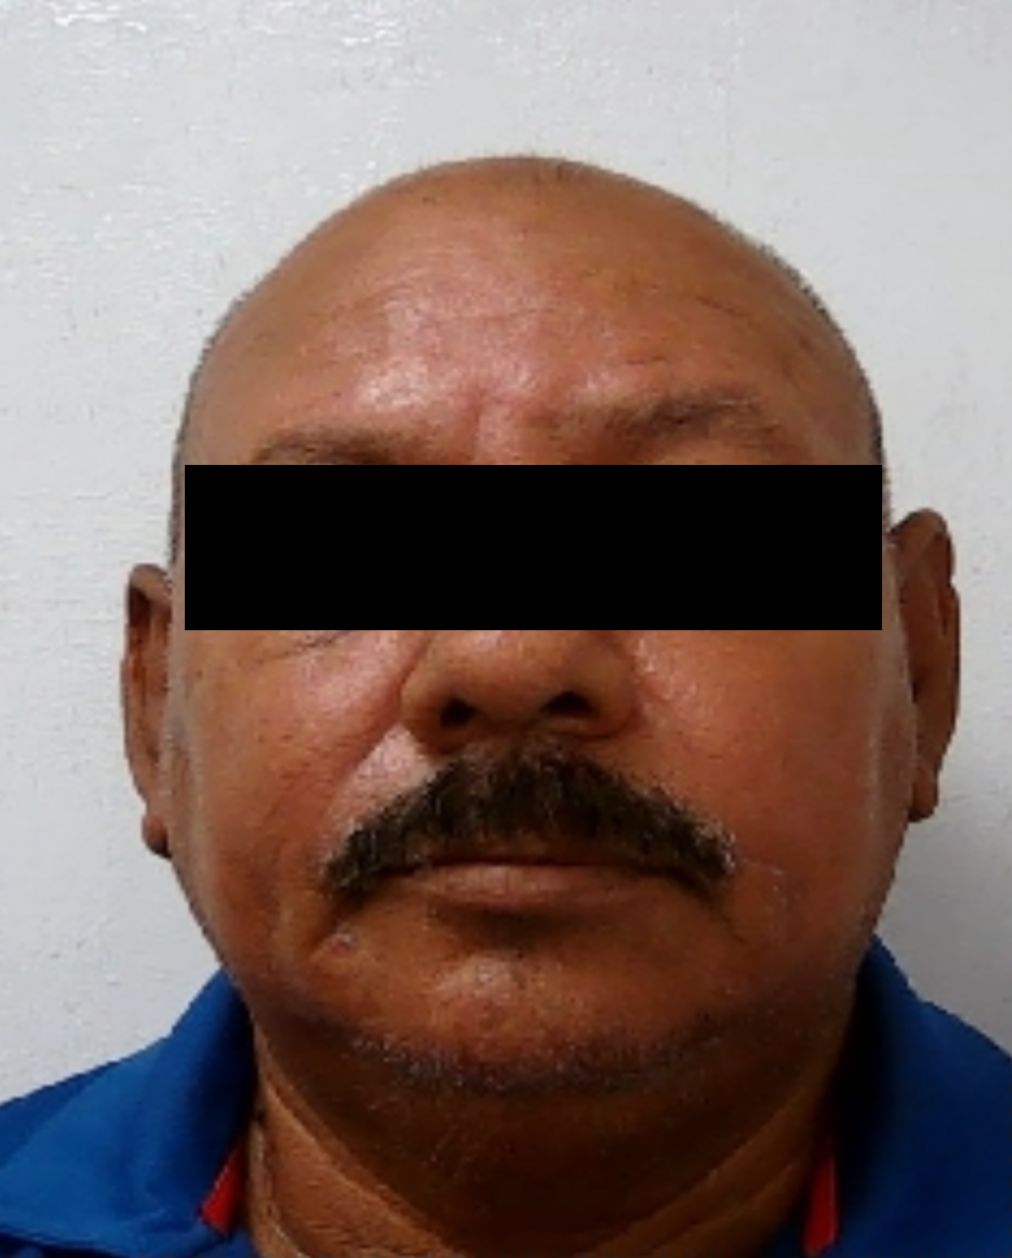 Vinculan a sujeto por presunto violador en Guaymas